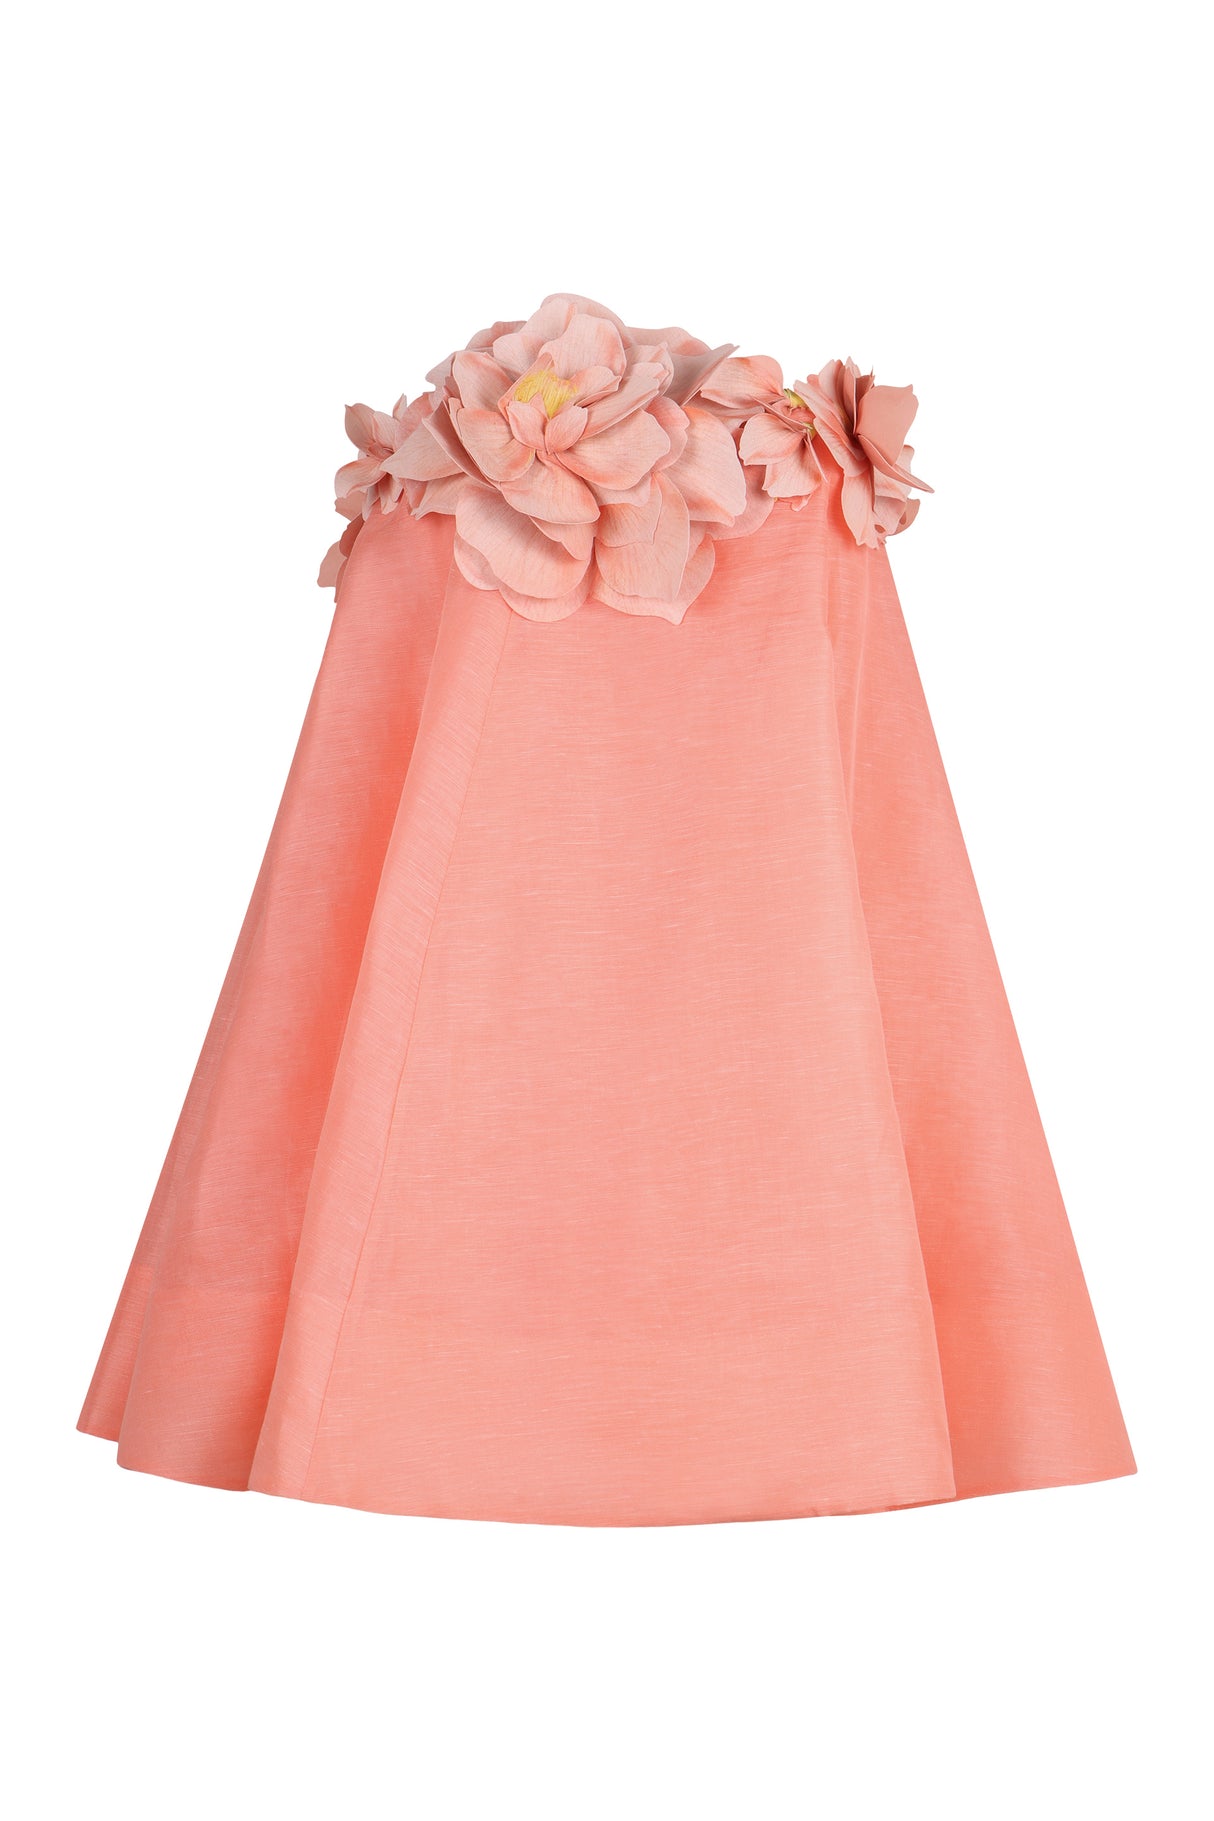 فستان قصير بنقشة زهور وجيوب - لون سلموني